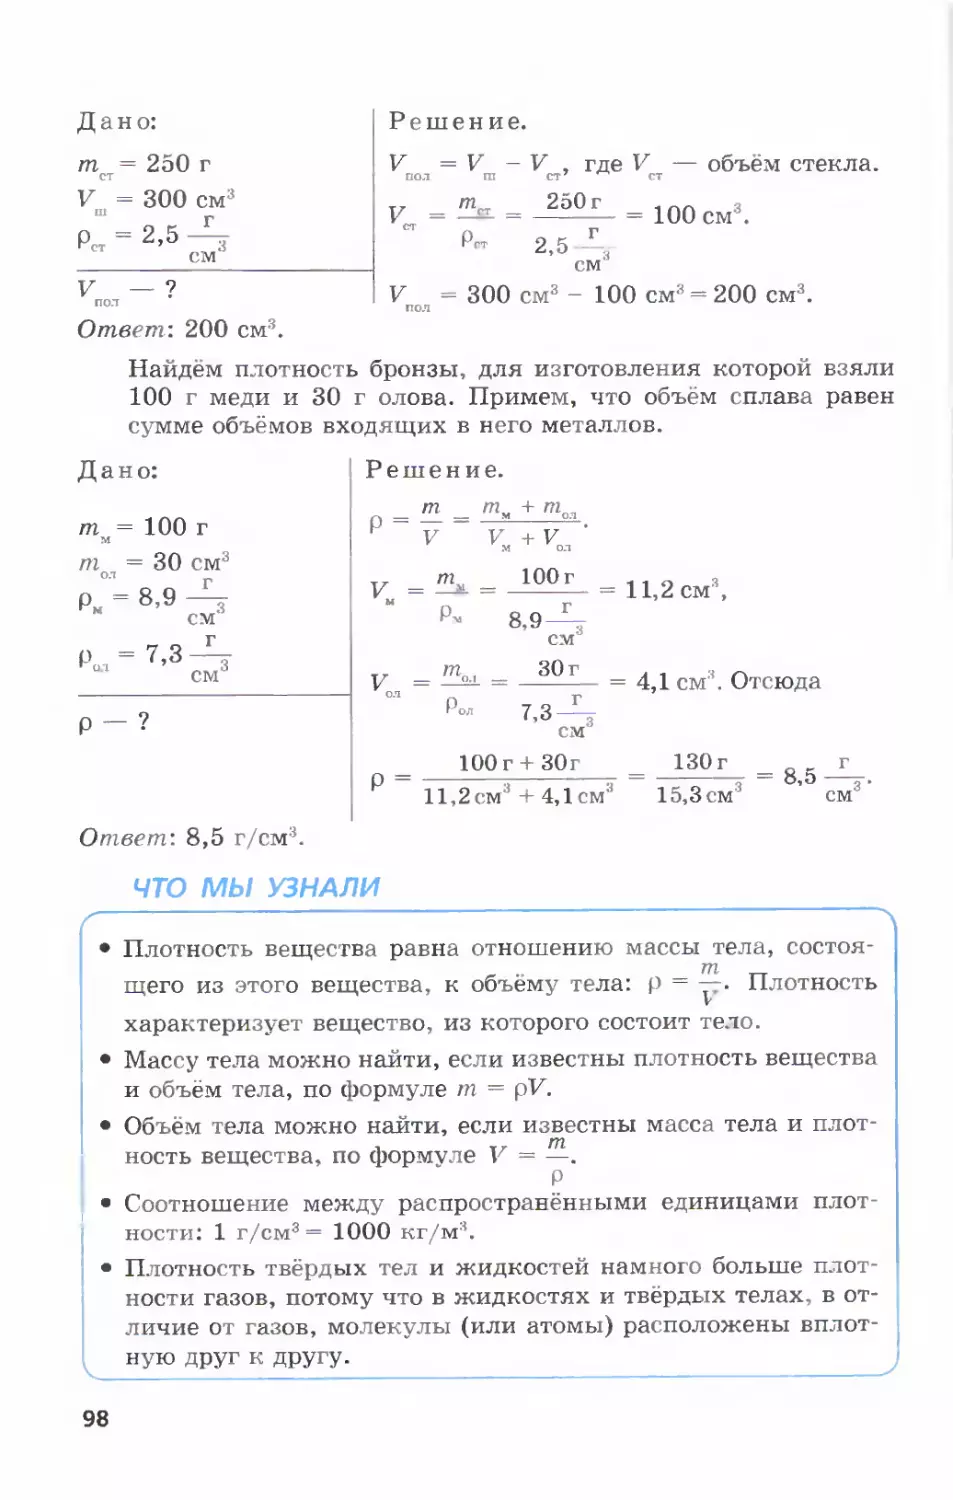 Физика 7 класс л э. Физика 7 класс генденштейн Кайдалов учебник. Гдз по физике 7 класс генденштейн учебник 2010. Гдз по физике 7 класс генденштейн учебник. Учебник по физике 7 класс генденштейн 1 часть.